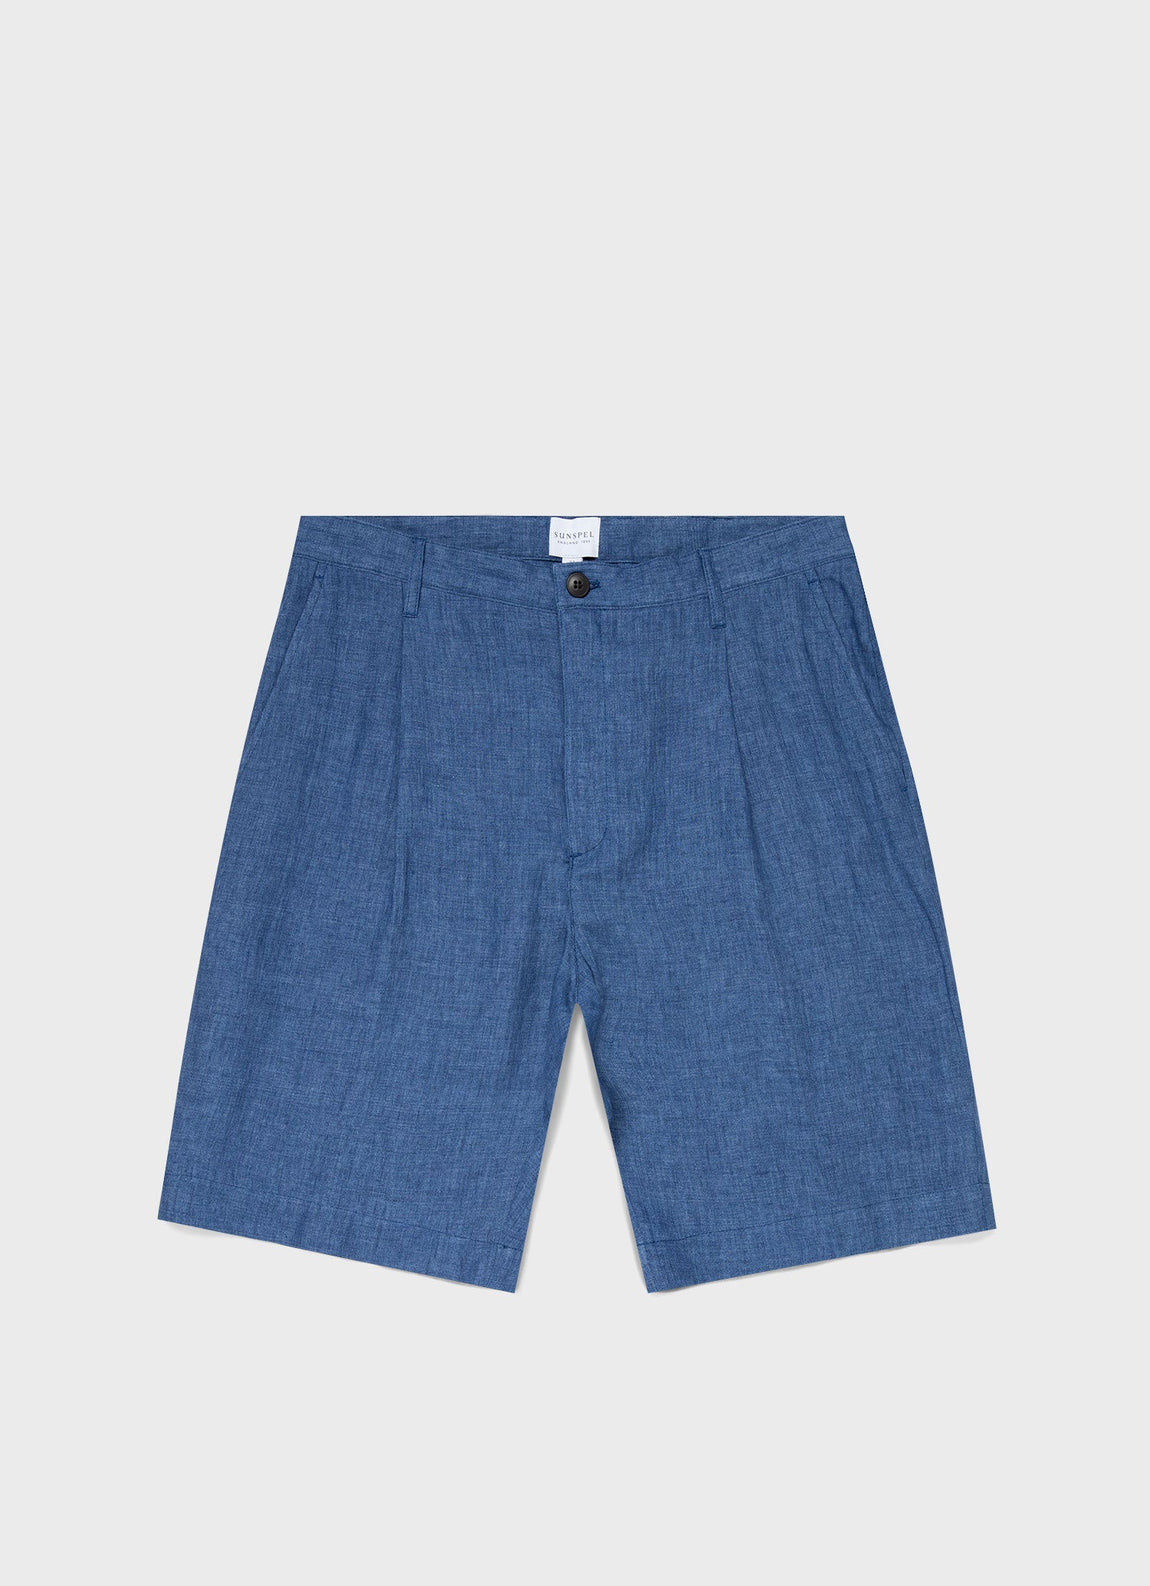 Men's Pleated Linen Short in Blue Melange